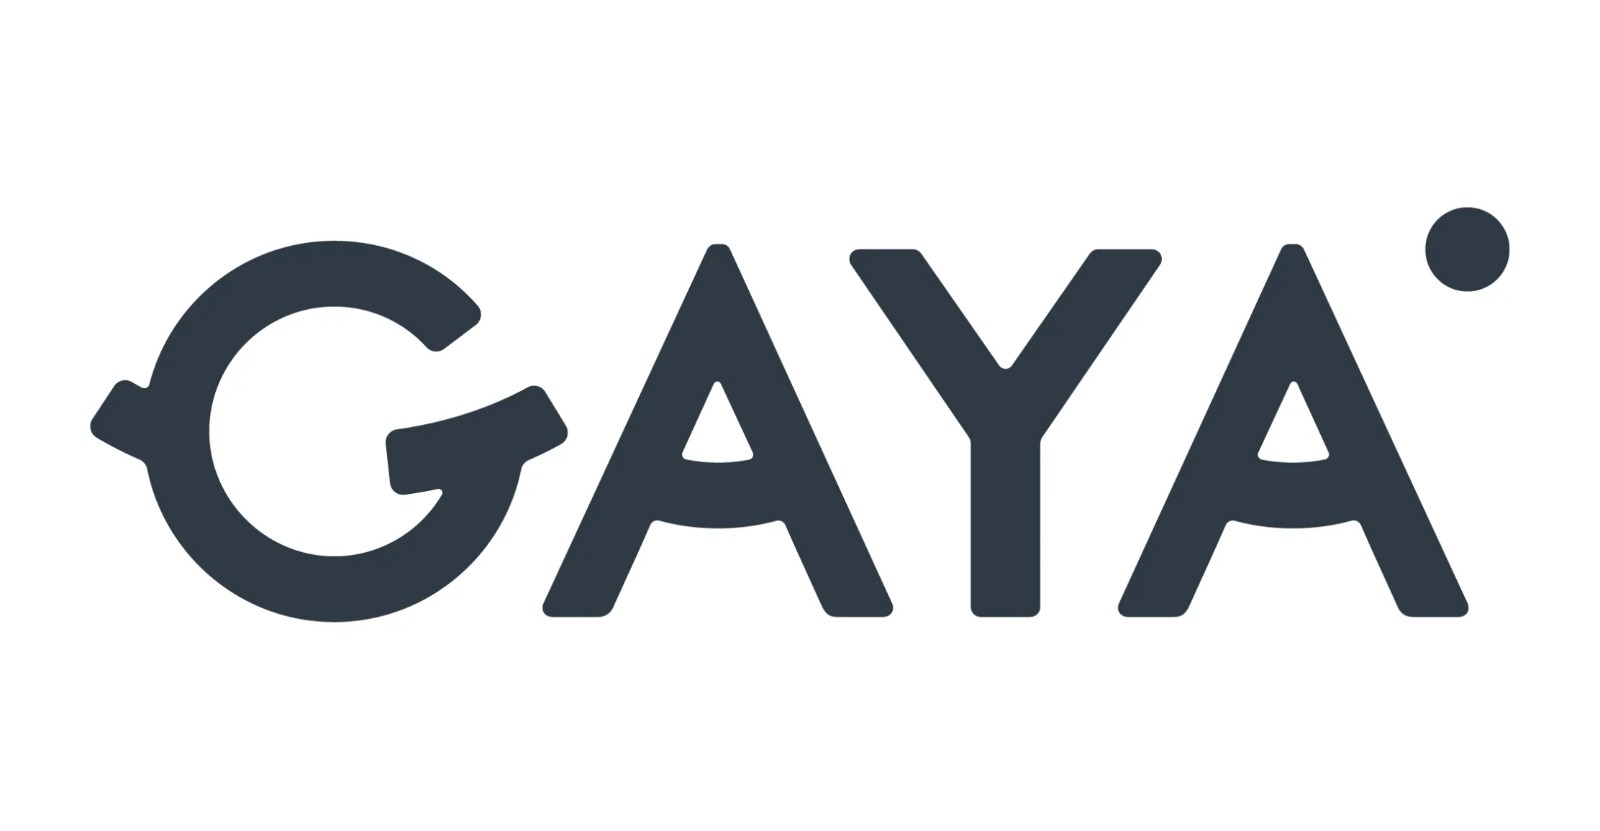 logo Gaya